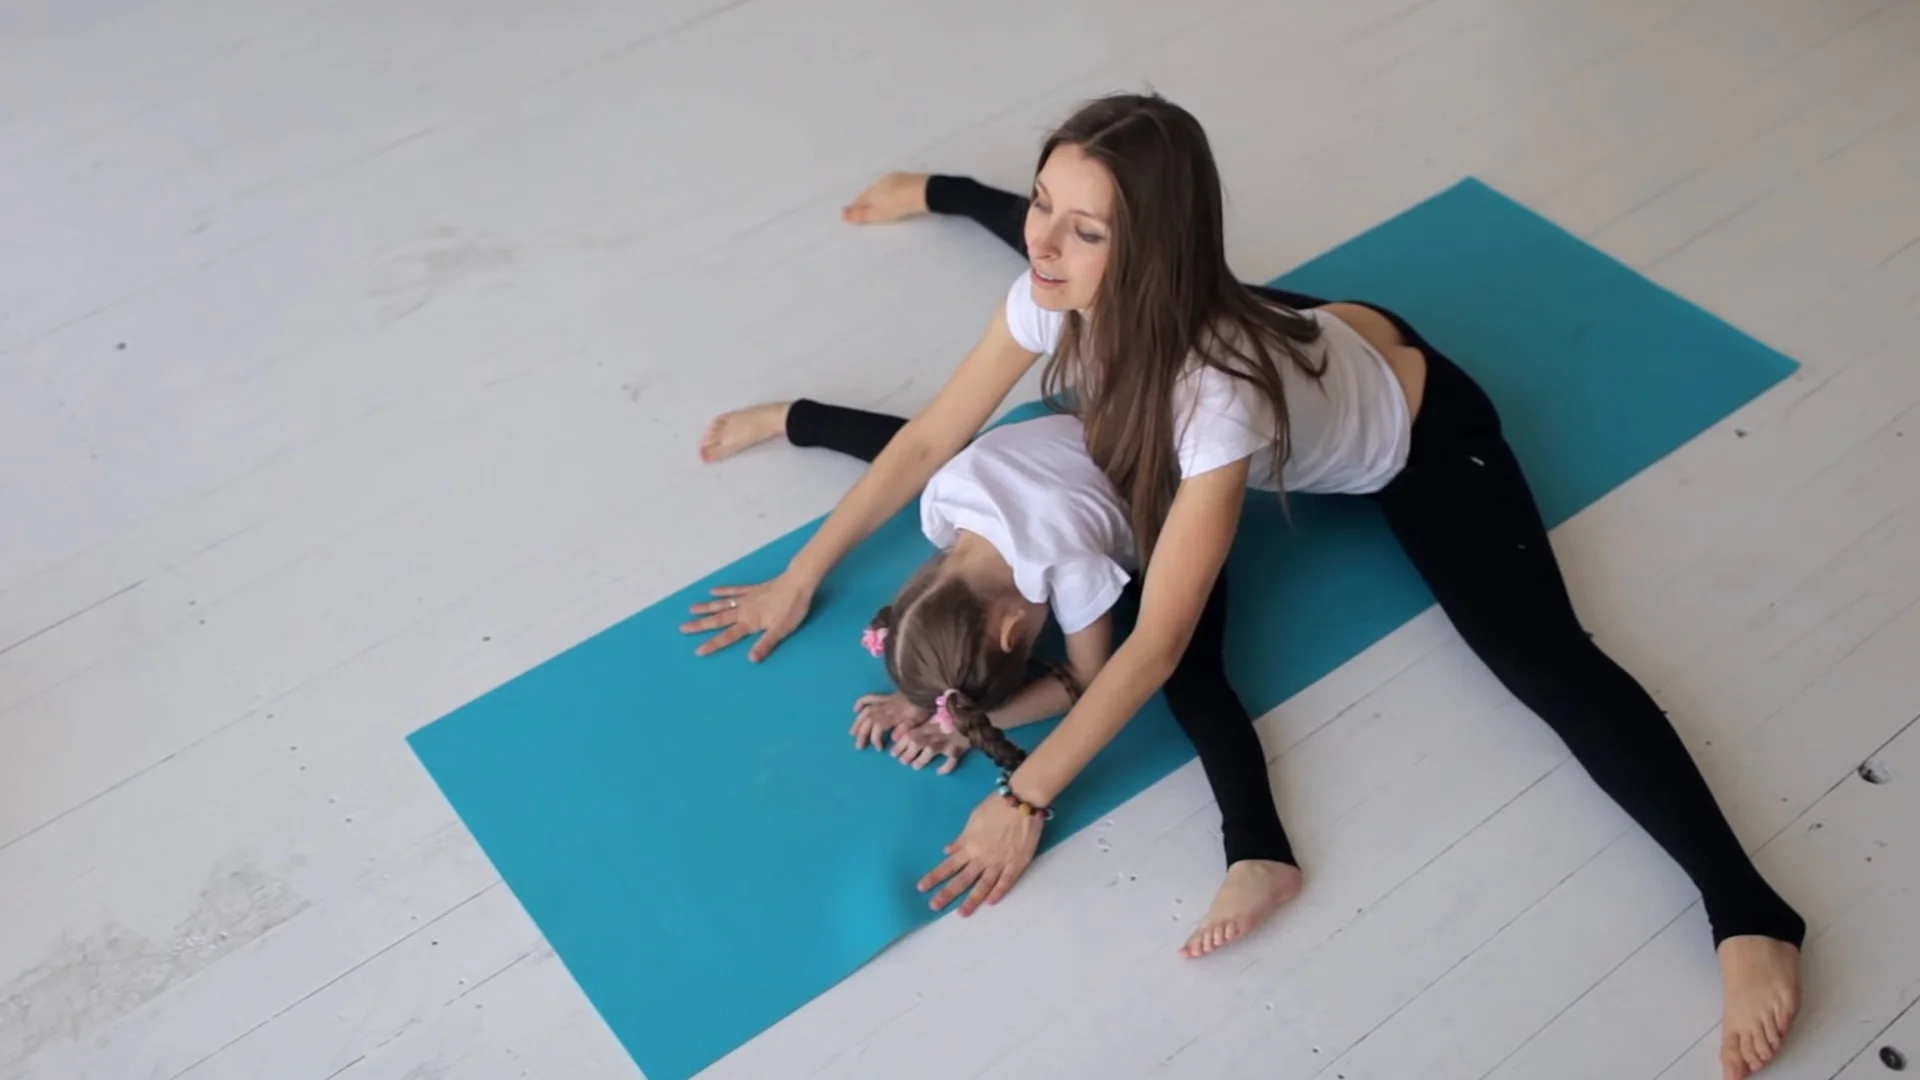 https://images.pond5.com/little-girl-doing-yoga-her-footage-088284075_prevstill.jpeg